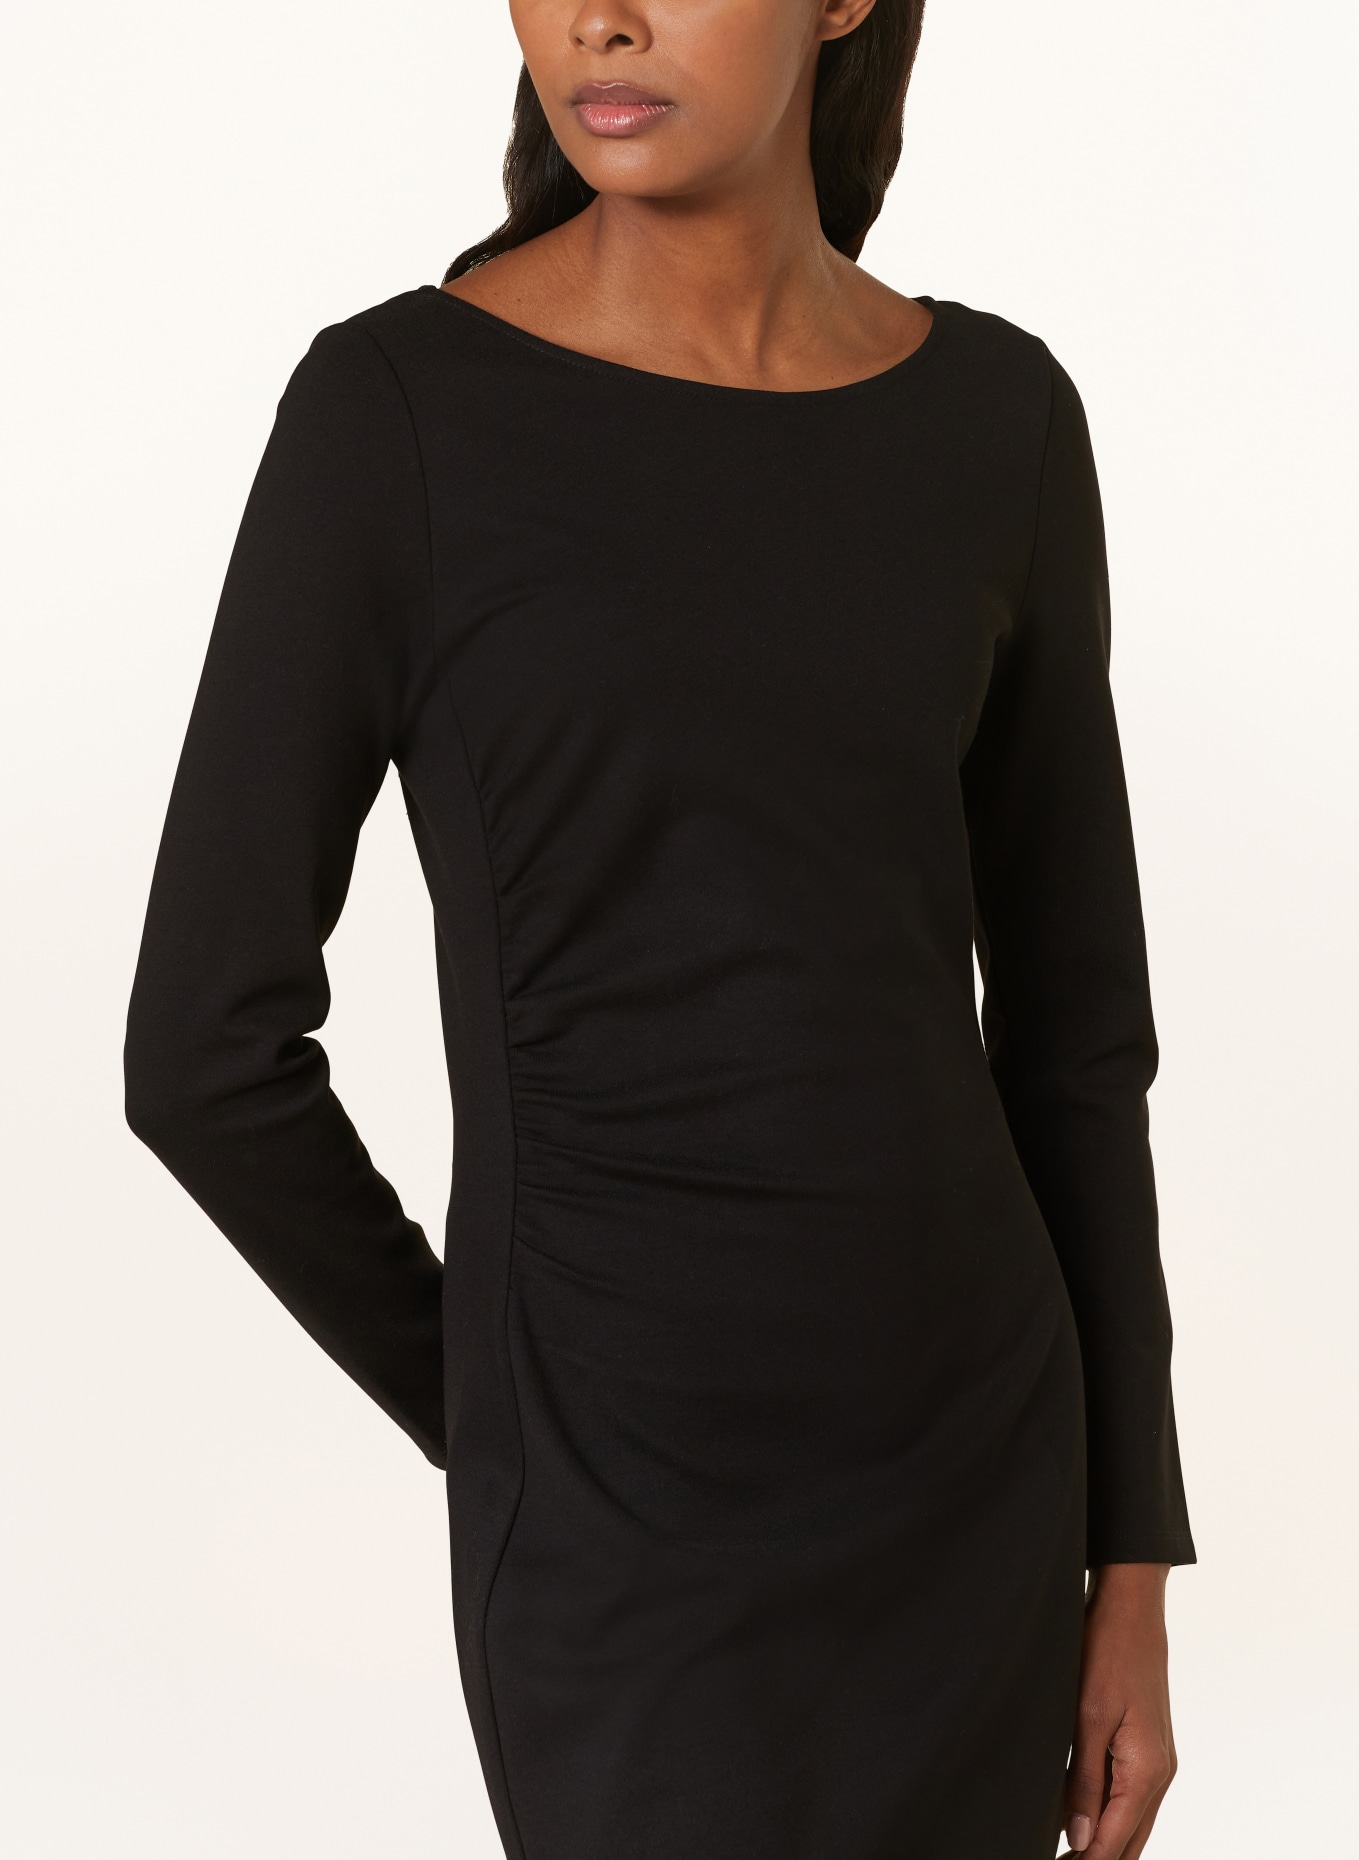 s.Oliver BLACK LABEL Sheath dress in jersey, Color: BLACK (Image 4)